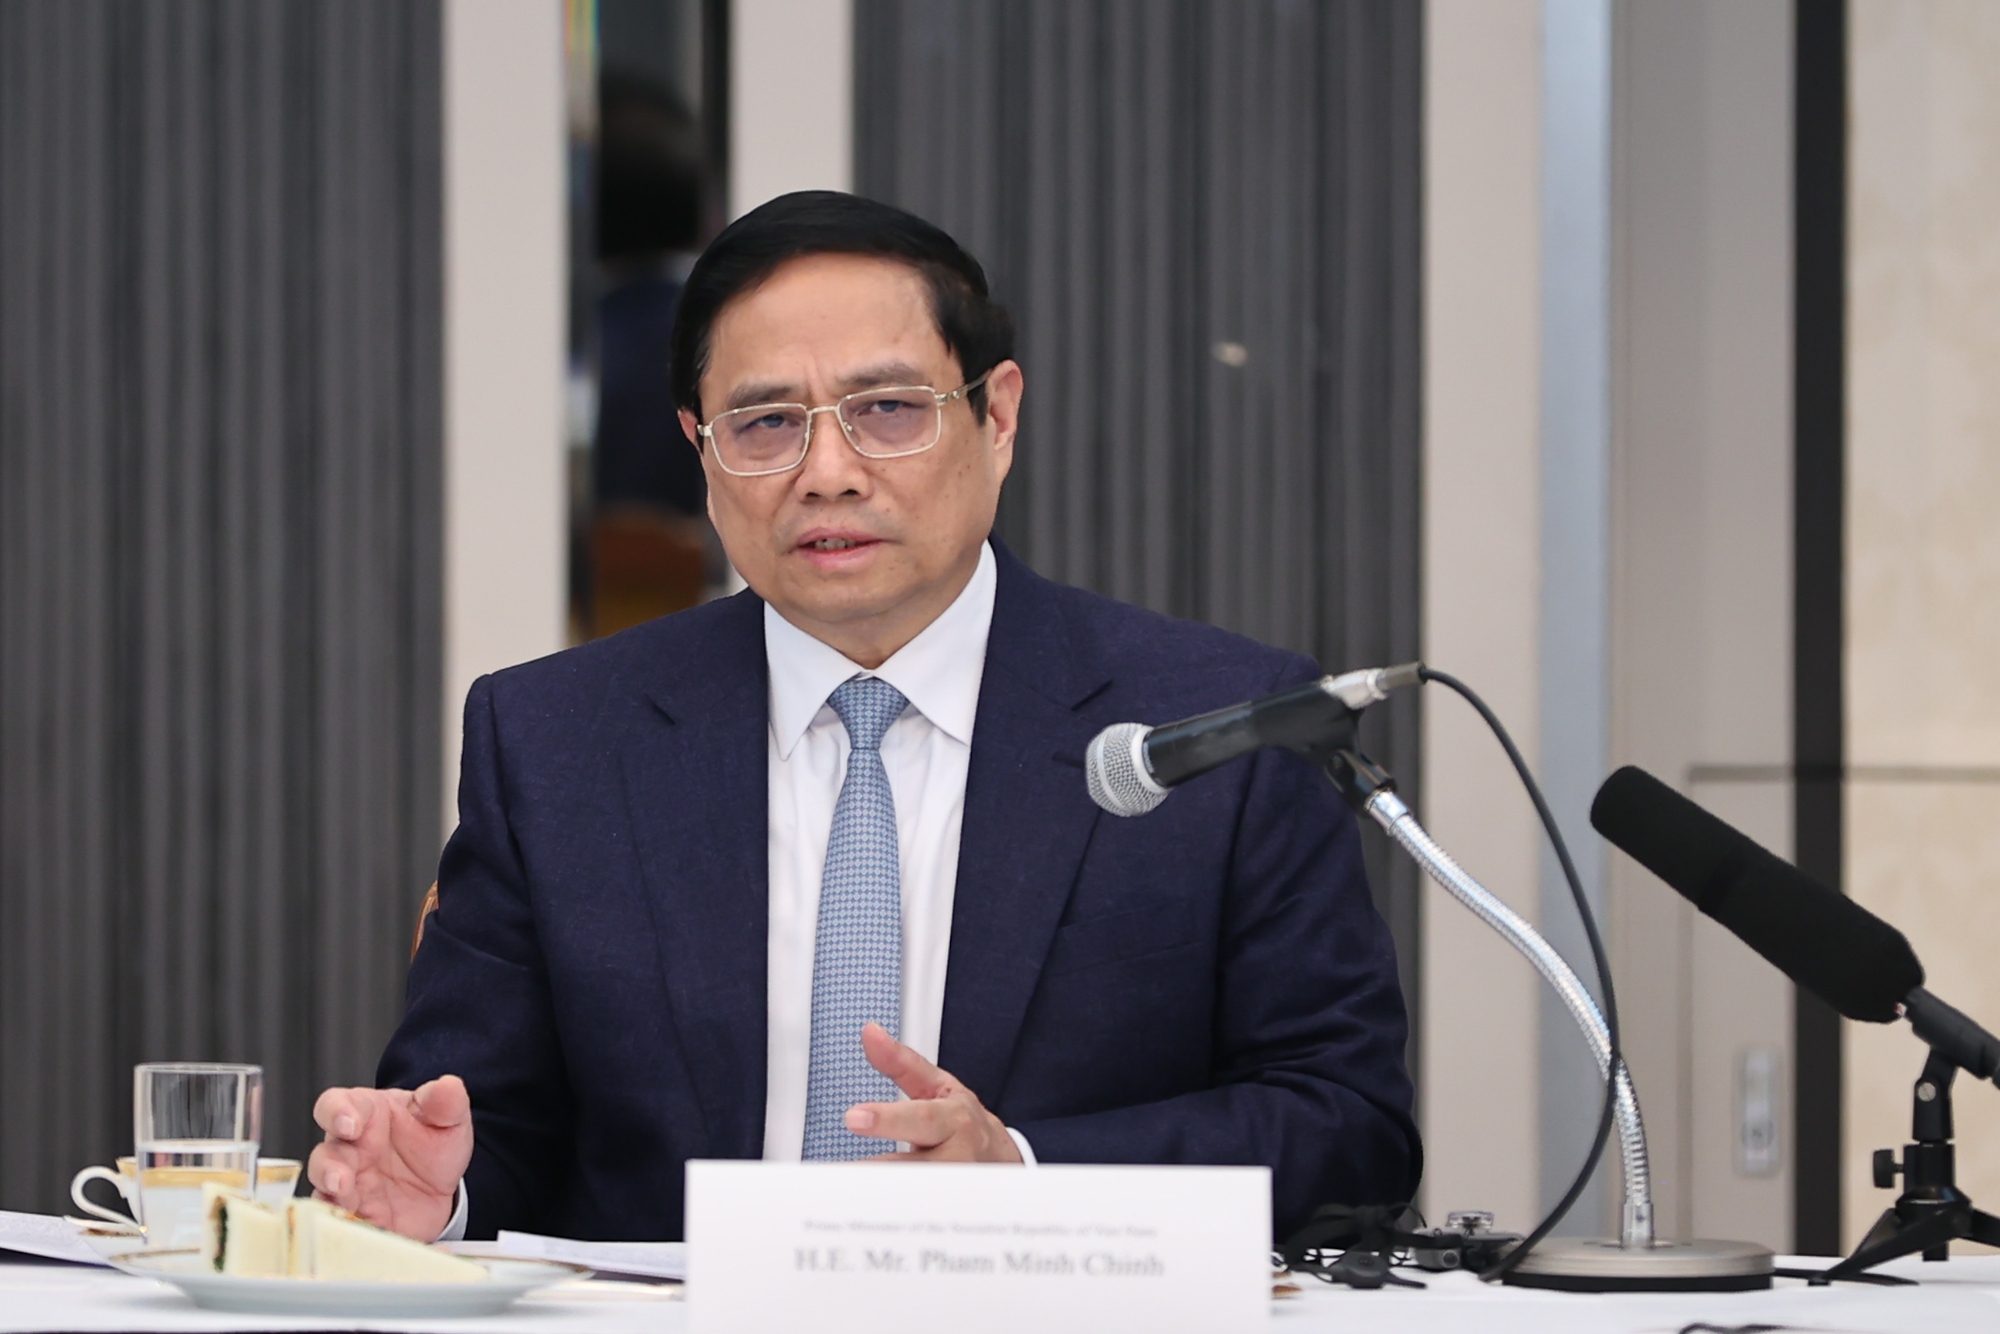 Thủ tướng trình bày về các yếu tố nền tảng phát triển của Việt Nam, chủ trương, đường lối, chính sách của Đảng, Nhà nước Việt Nam về một số lĩnh vực trụ cột - Ảnh: VGP/Nhật Bắc